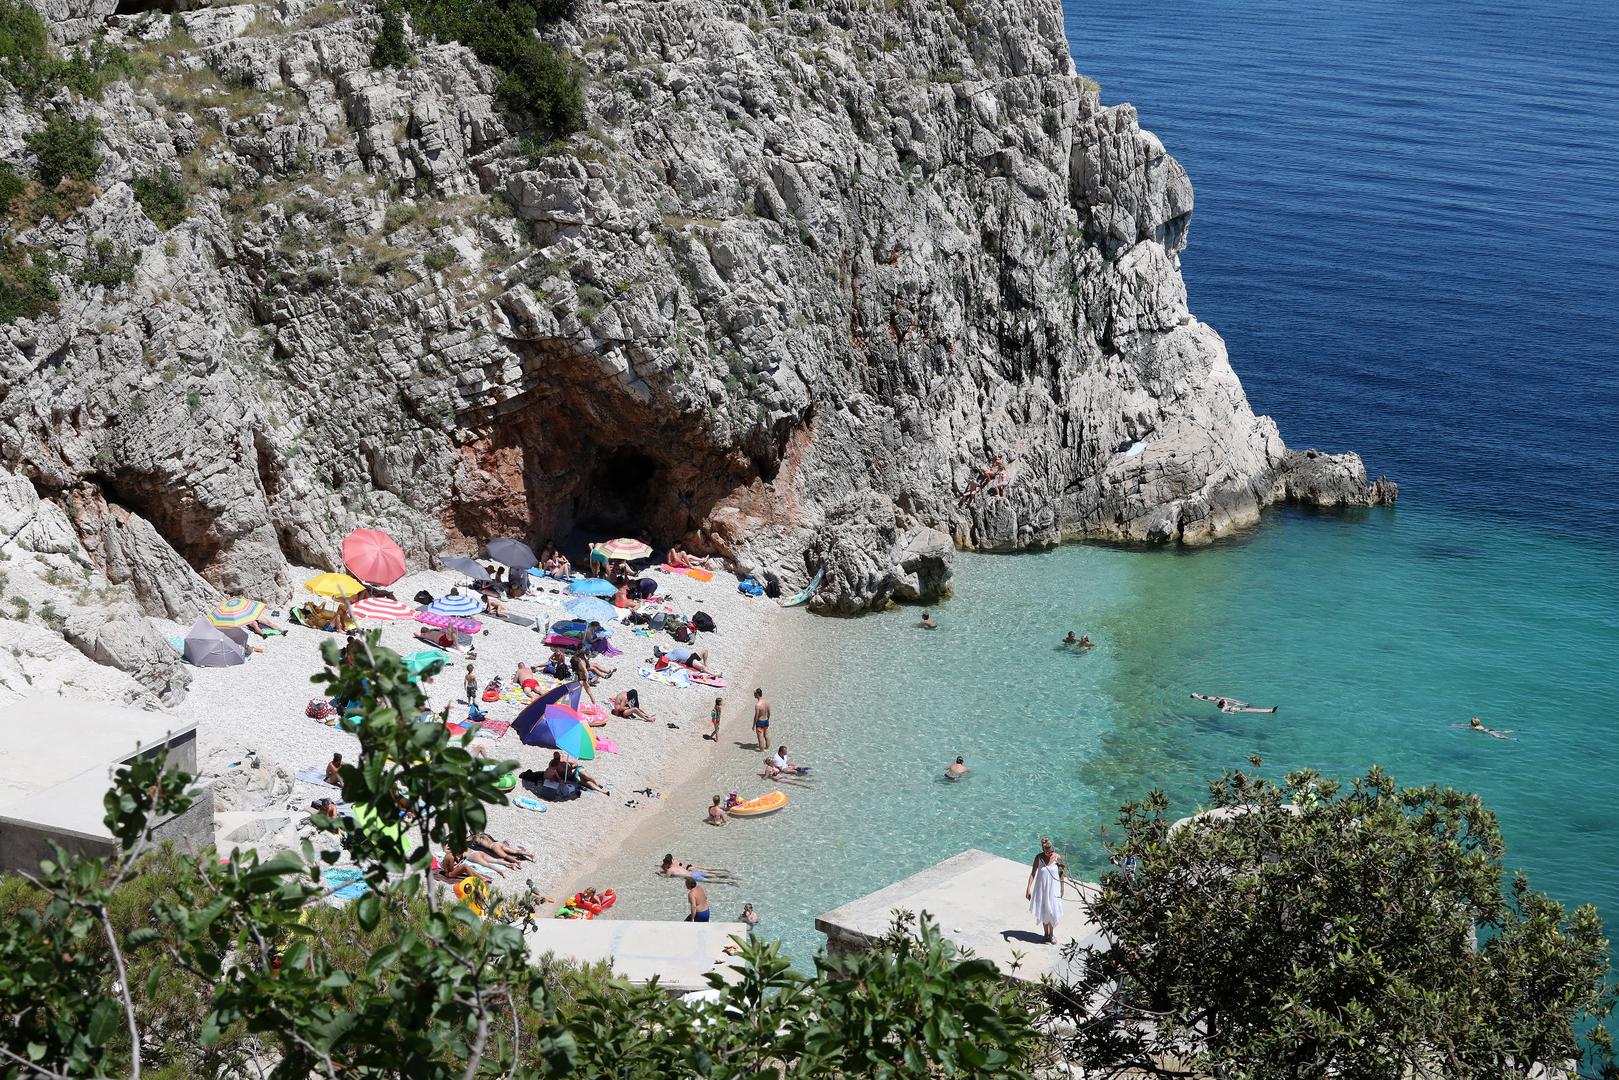 Plaža Klančac nalazi se ispod vrha litice, u srednjovjekovnom selu Brseč u Istri, koja izmiče pažnji brojnih turista. Lijepa mala plaža s čistim morem u koje se ulazi blagim nagibom. Na plaži nema uslužnih objekata, a u neposrednoj blizini plaže nema mjesta za parkiranje pa je malo izazovno doći do nje. Plaža Klančac smatra se najljepšom plažom Kvarnera.

